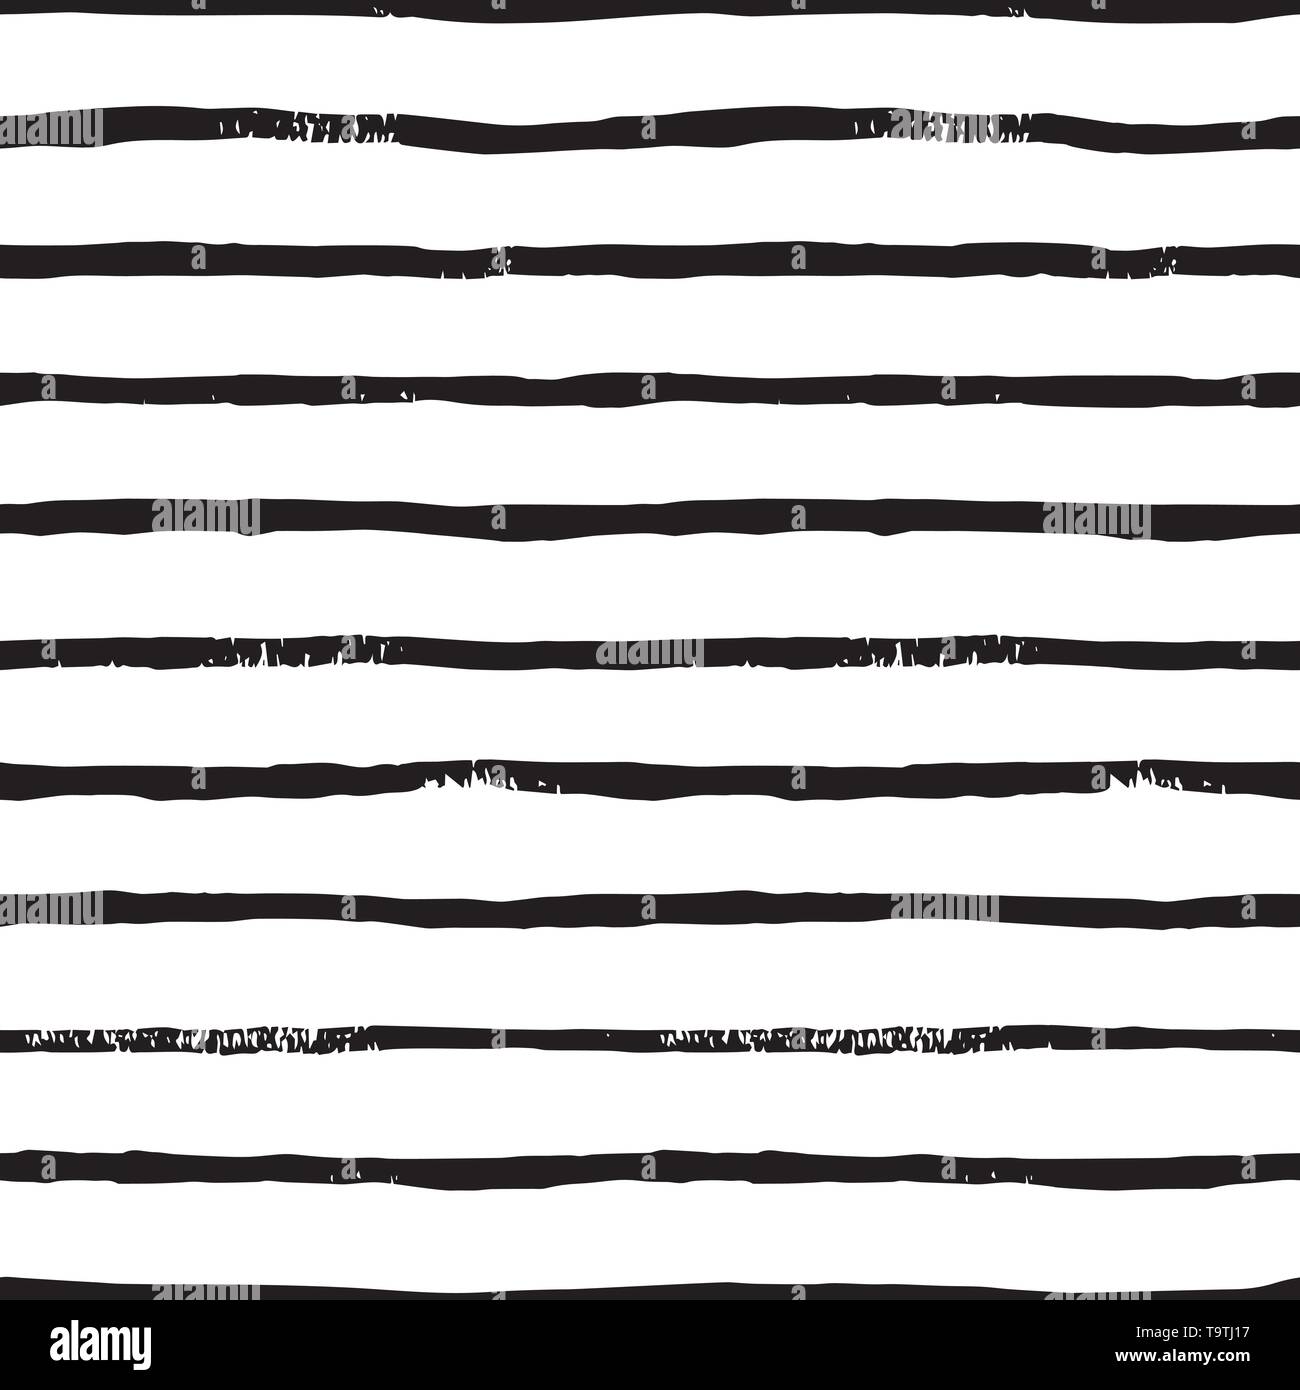 La striscia della spazzola di linea seamless pattern in monocromatico. Vector grunge sfondo nero con tratti di pennello. Disegnato a mano striscia orizzontale texture. Illustrazione Vettoriale